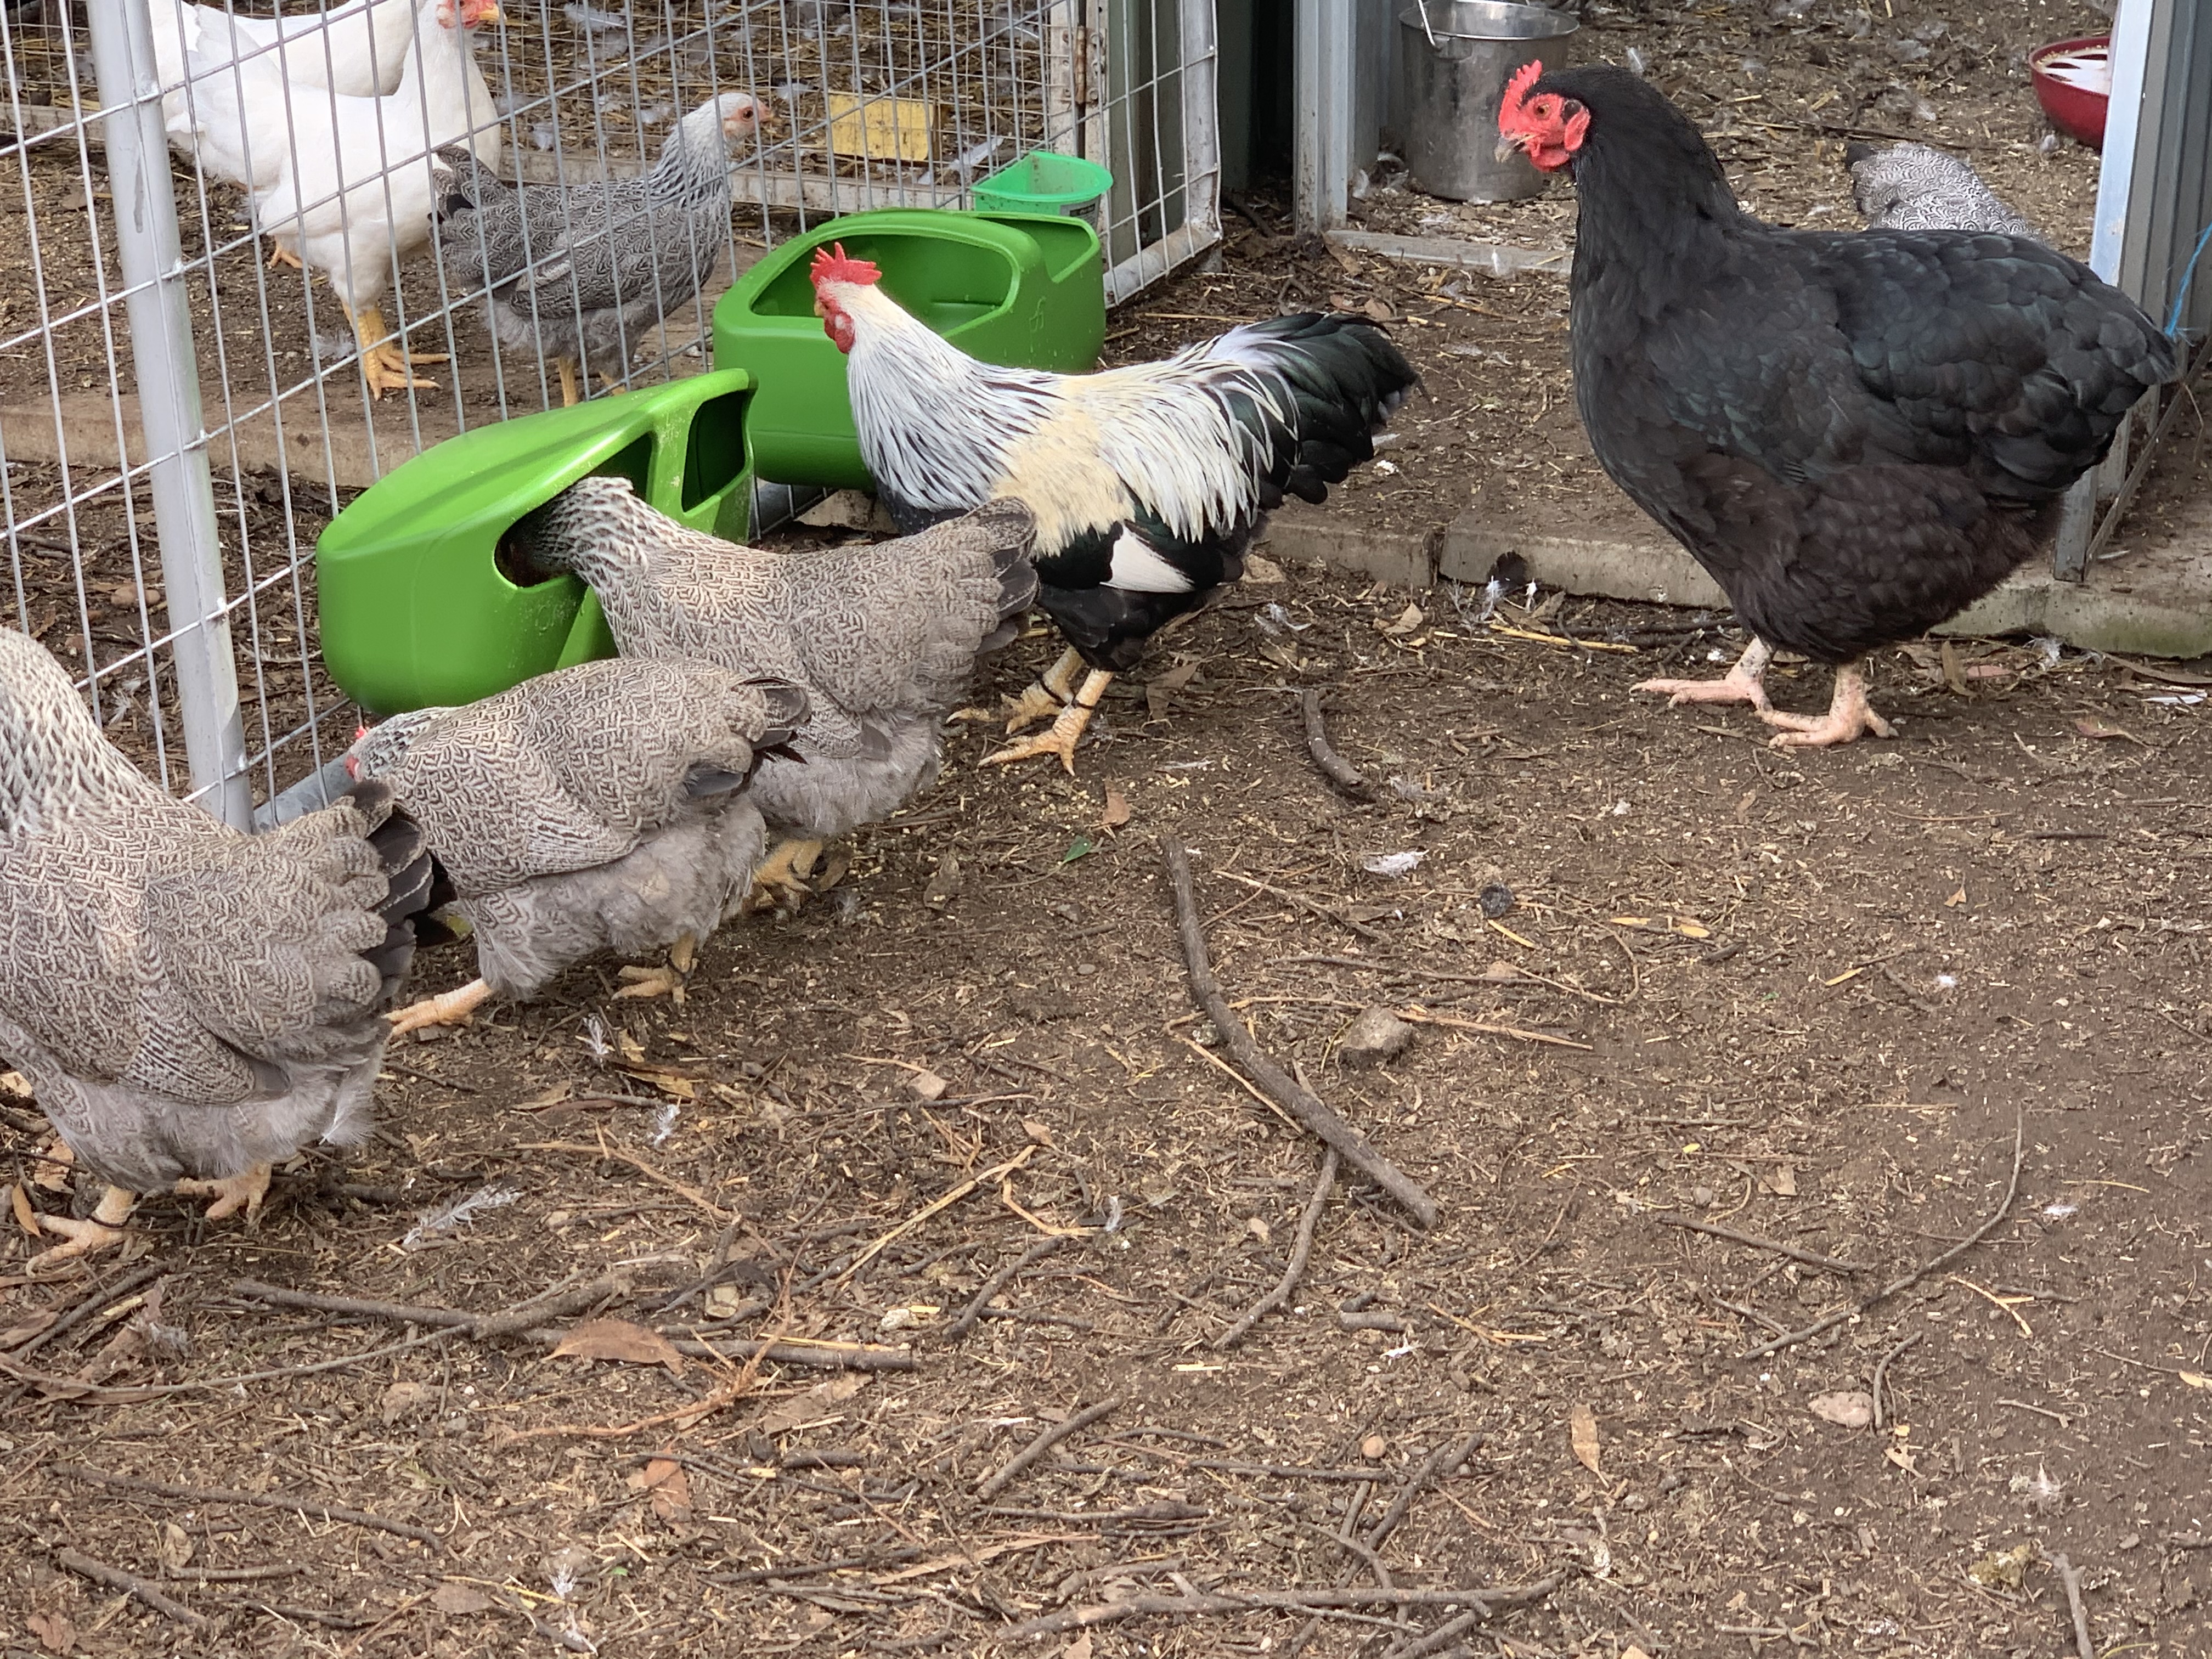 Muchas gallinas en un corral de jardín comiendo de los comederos